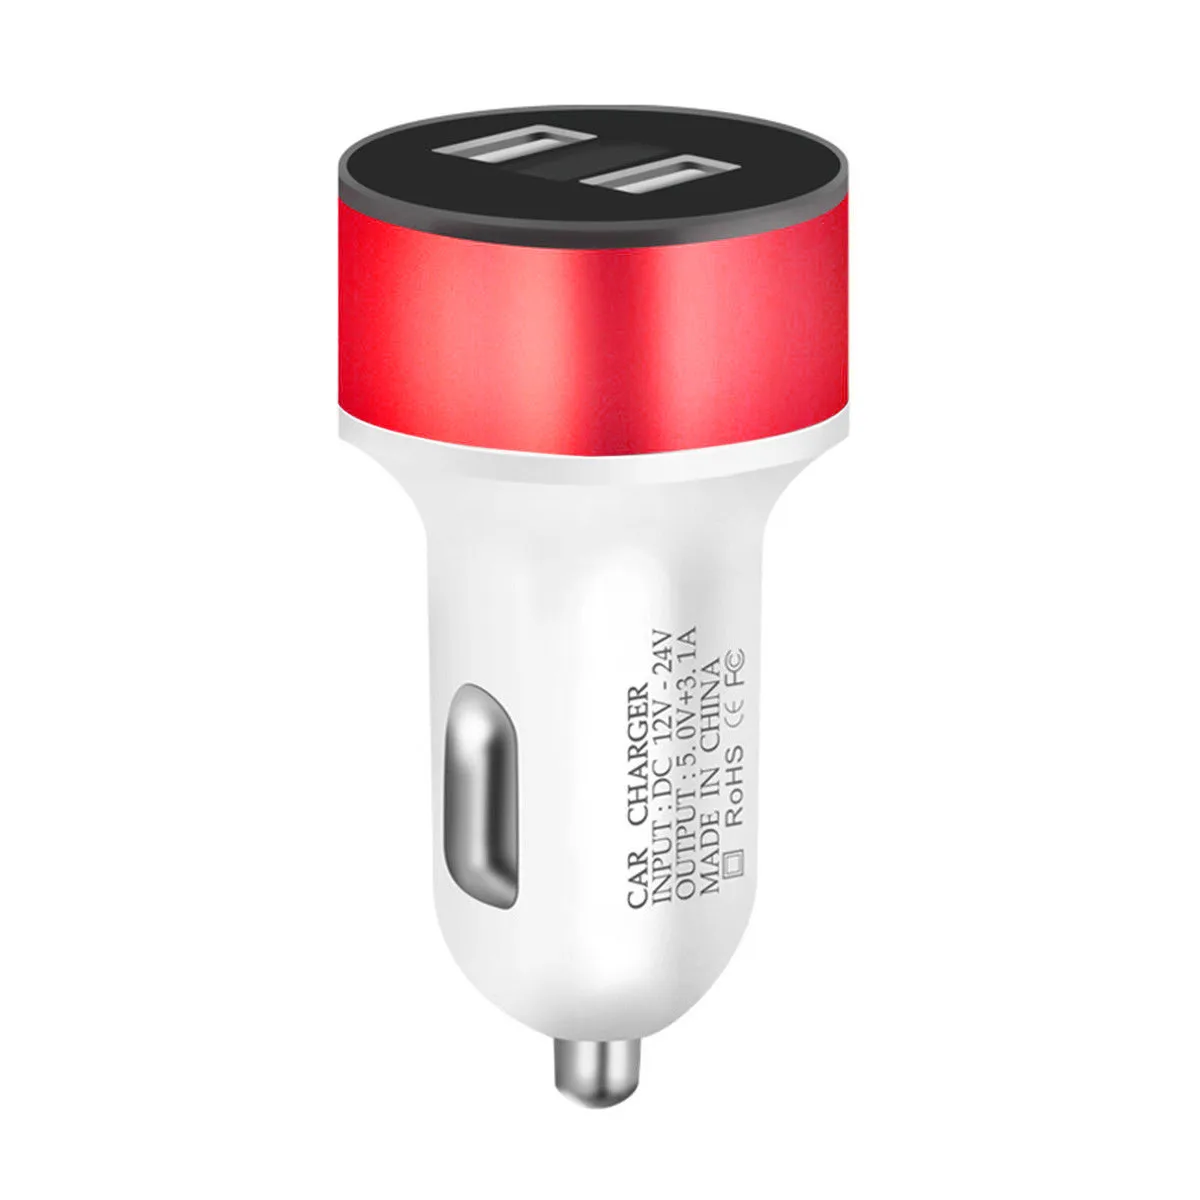 Новые Горячие Dual USB Мощность адаптер 12 V-24 V 3.1A мобильного телефона гнездо сигареты Зажигалка адаптер светодиодный Дисплей быстрой зарядки - Название цвета: Red